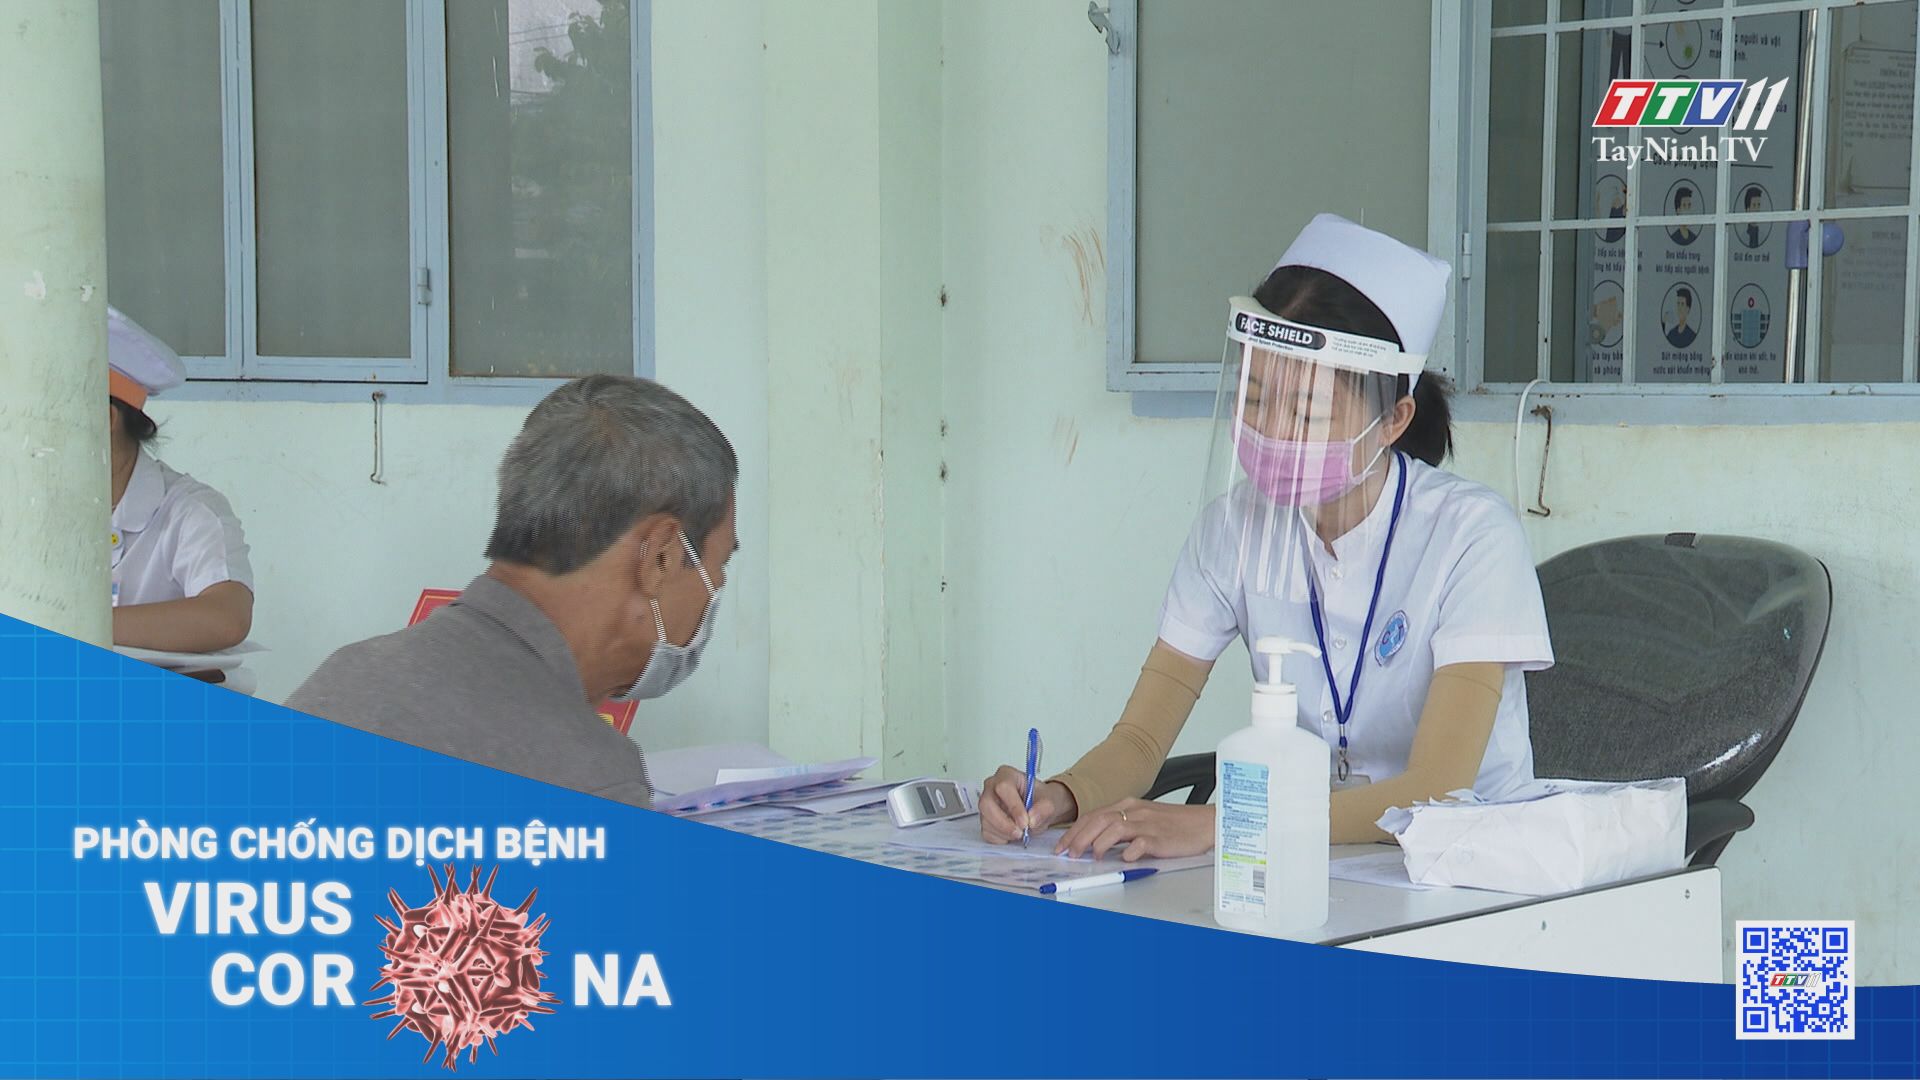 Nâng cao ý thức, trách nhiệm trong phòng chống dịch Covid-19 | THÔNG TIN DỊCH CÚM COVID-19 | TayNinhTV 